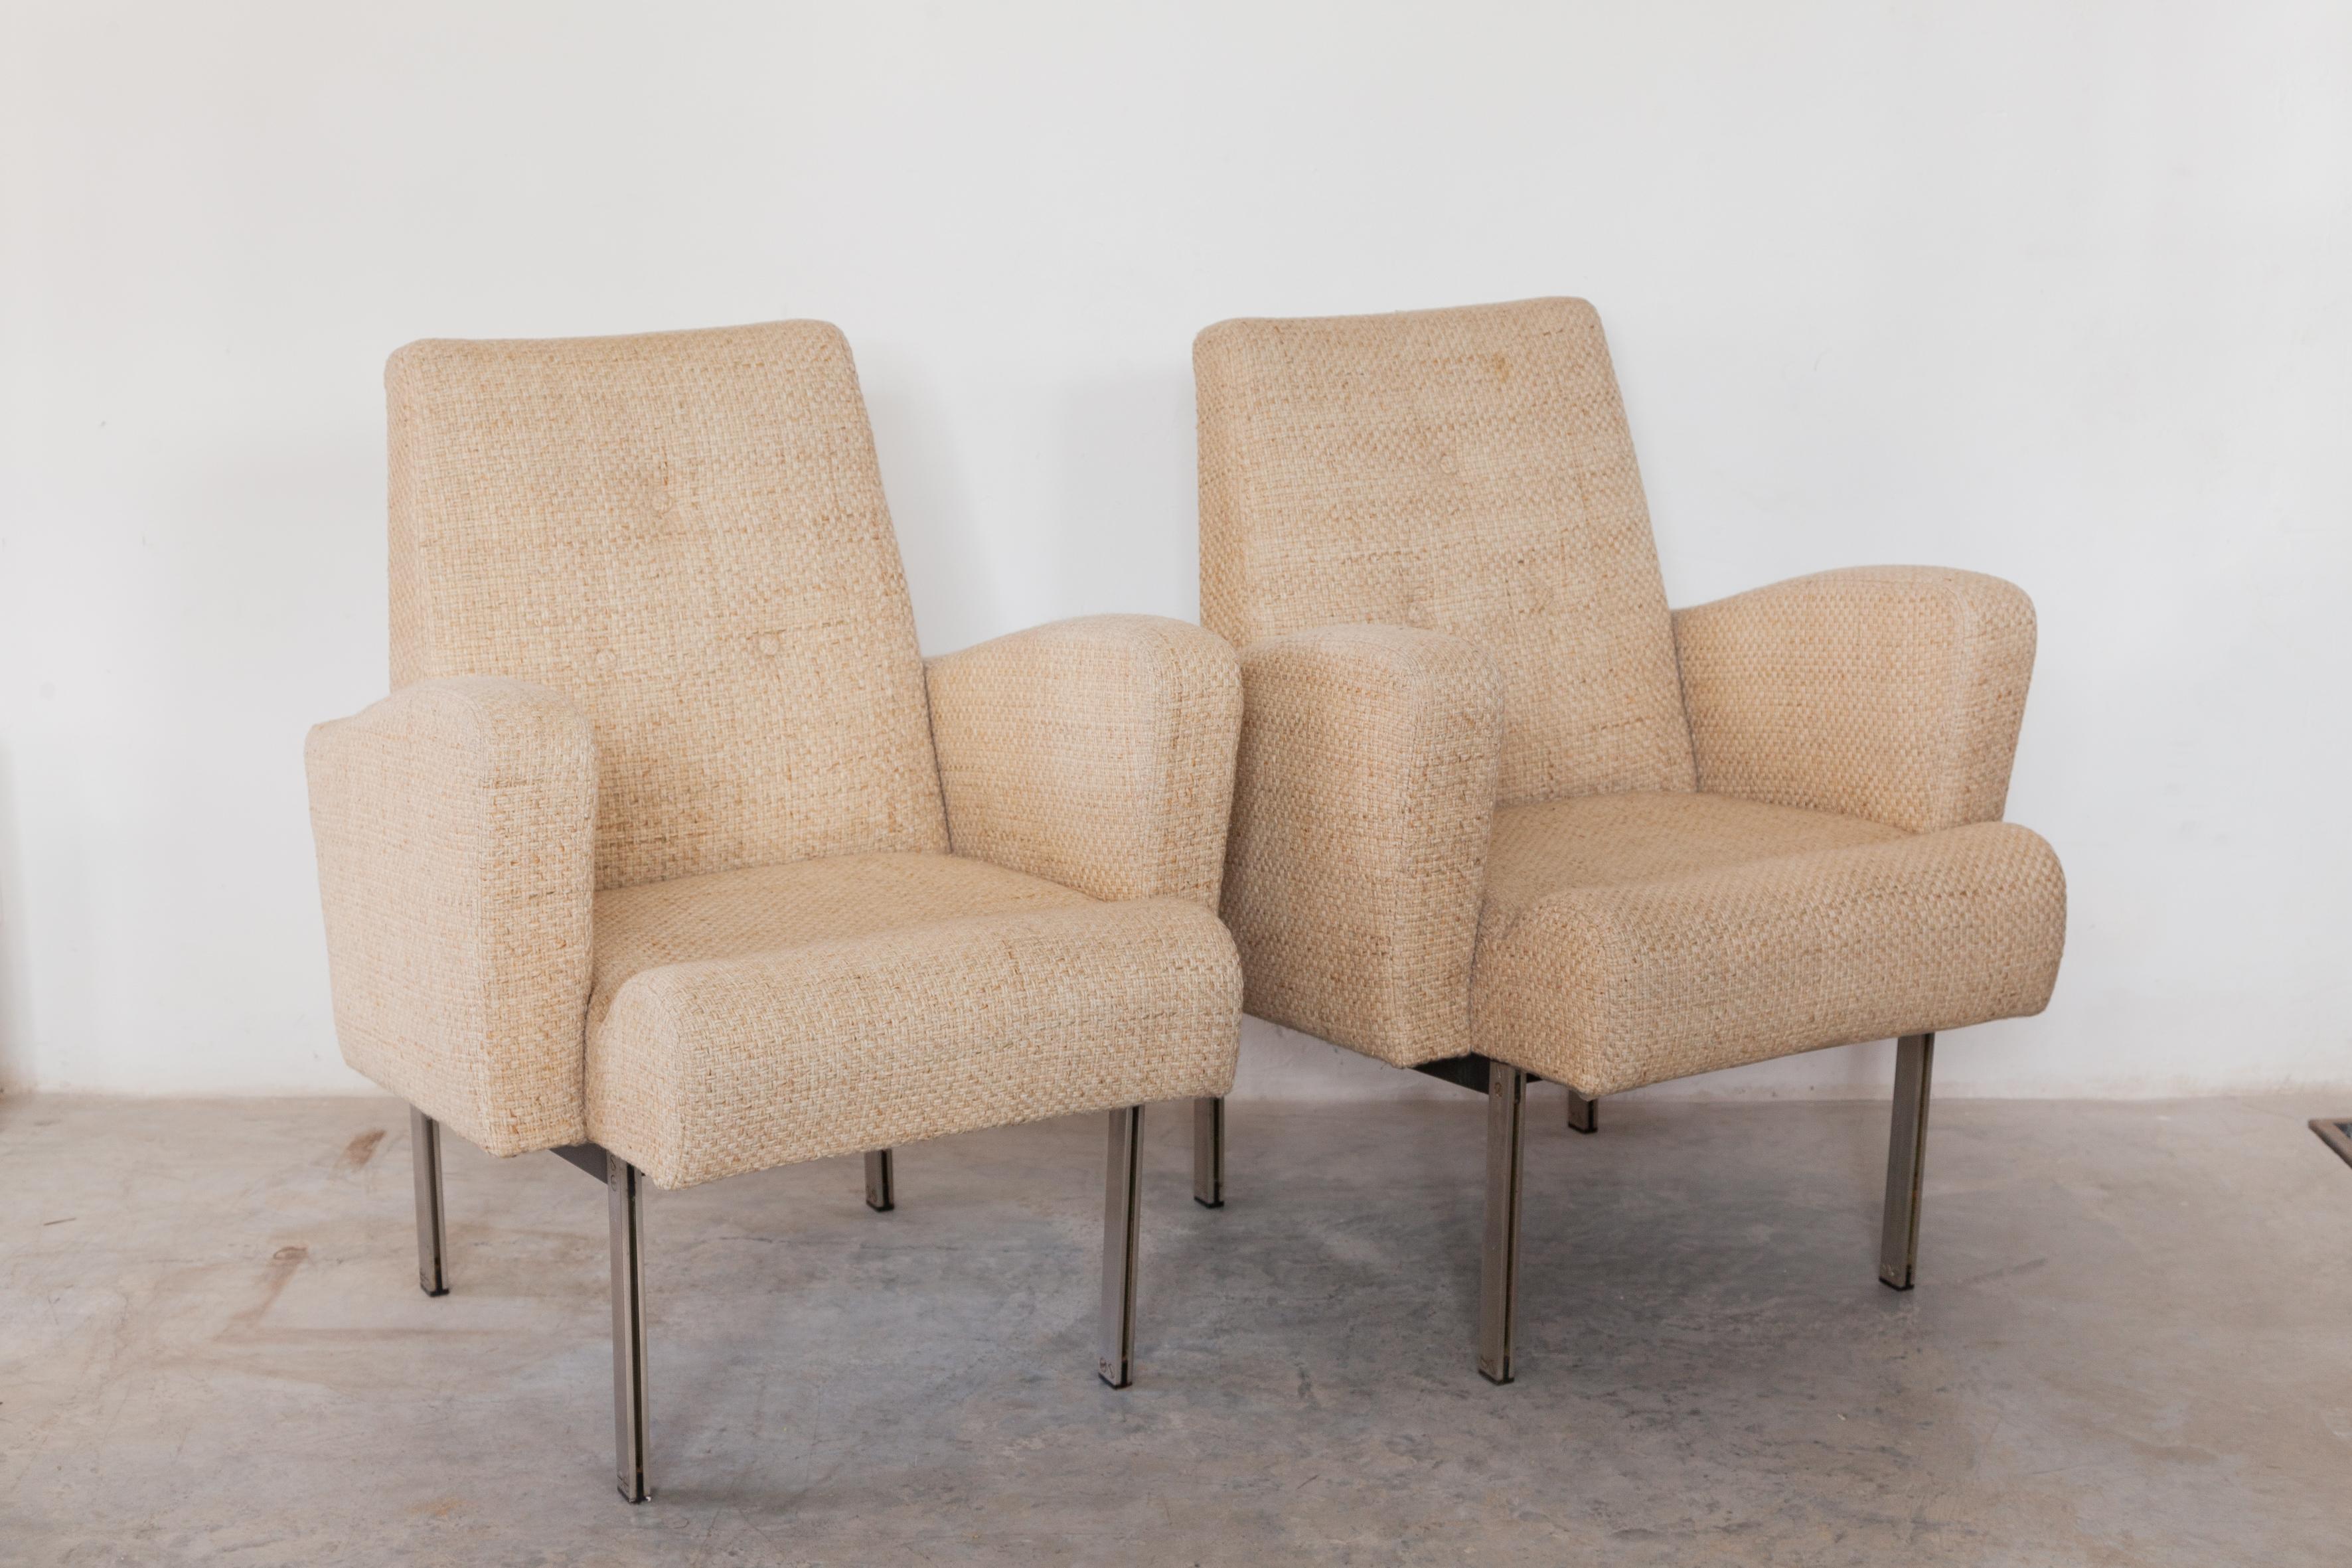 Eine schöne Reihe von Vintage-Stahl verchromt von bequemen Lounge-Stühlen im Stil von Milo Baughman in den 1960er Jahren entworfen. Diese klassischen und eleganten Stühle verfügen über ein architektonisches Chromgestell mit vorgeformten